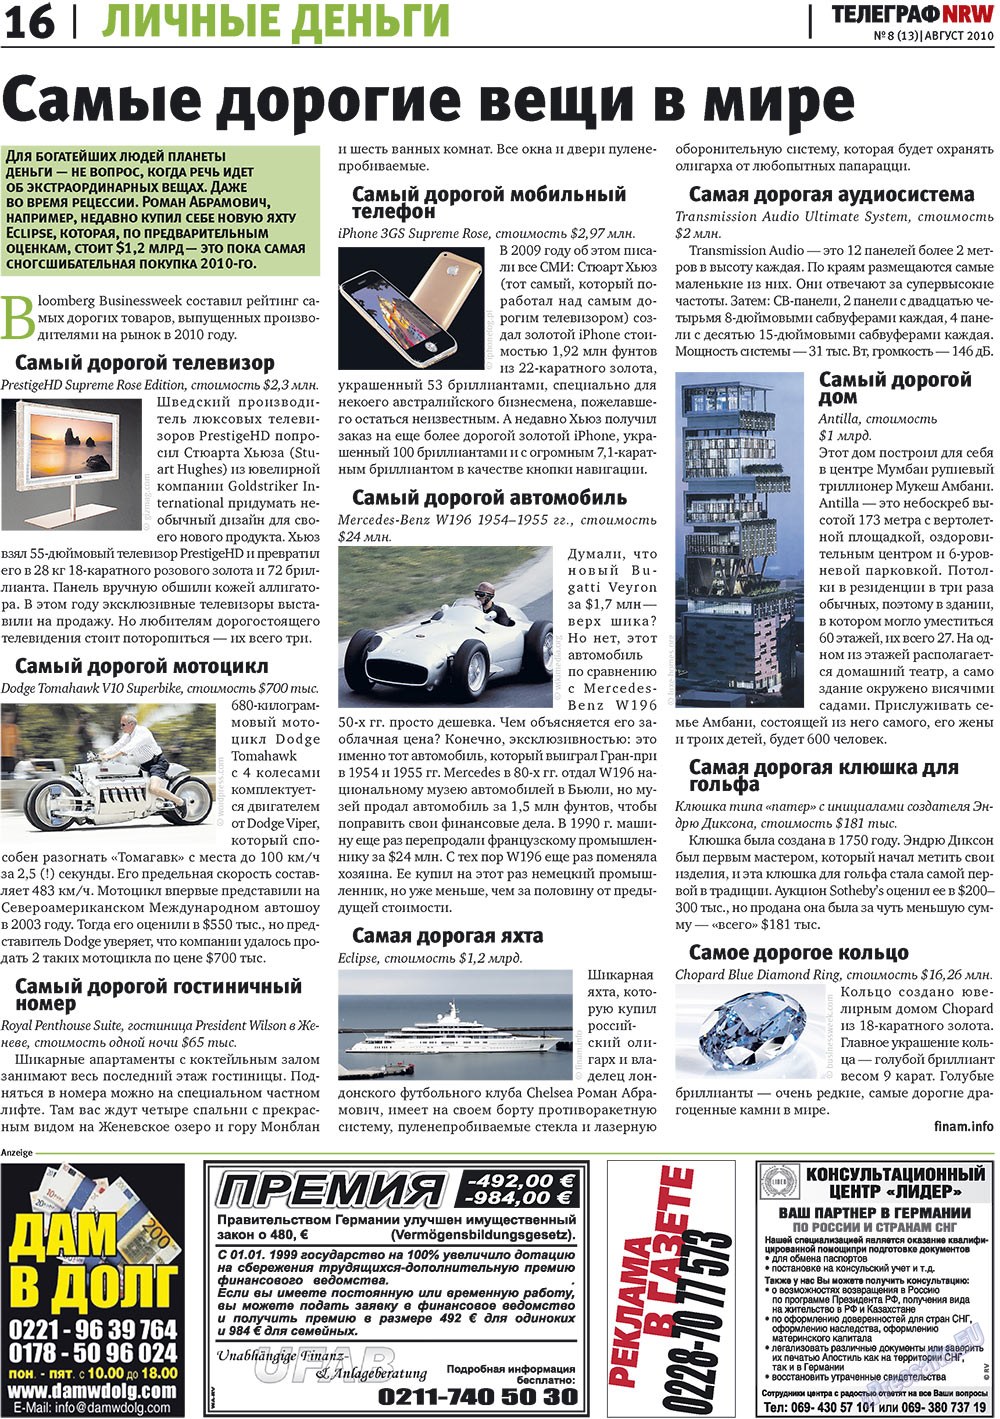 Telegraf NRW (Zeitung). 2010 Jahr, Ausgabe 8, Seite 16